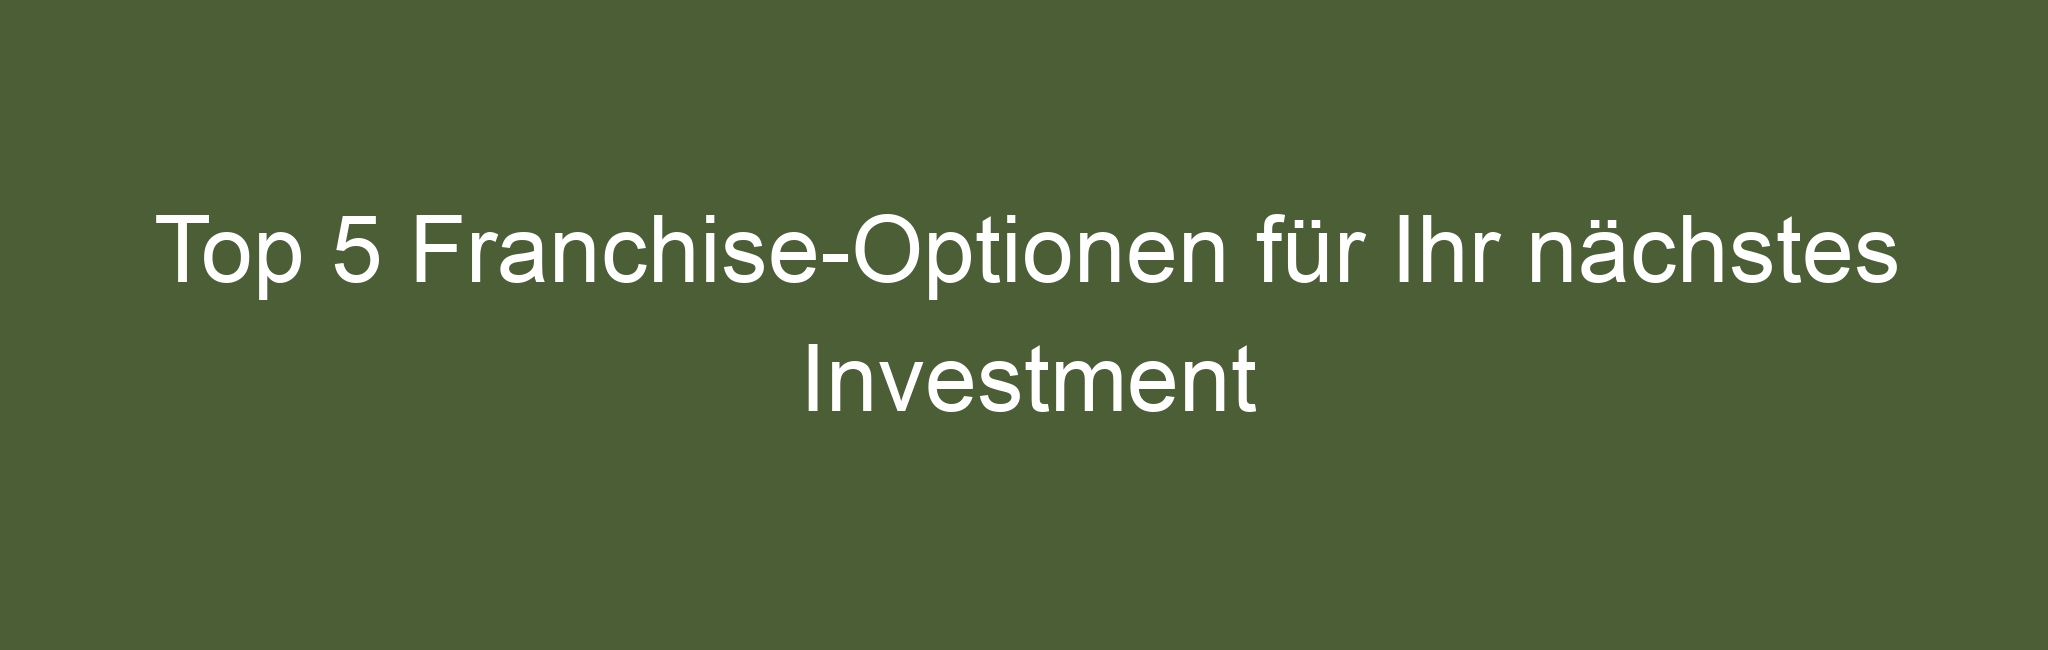 Top 5 Franchise-Optionen für Ihr nächstes Investment